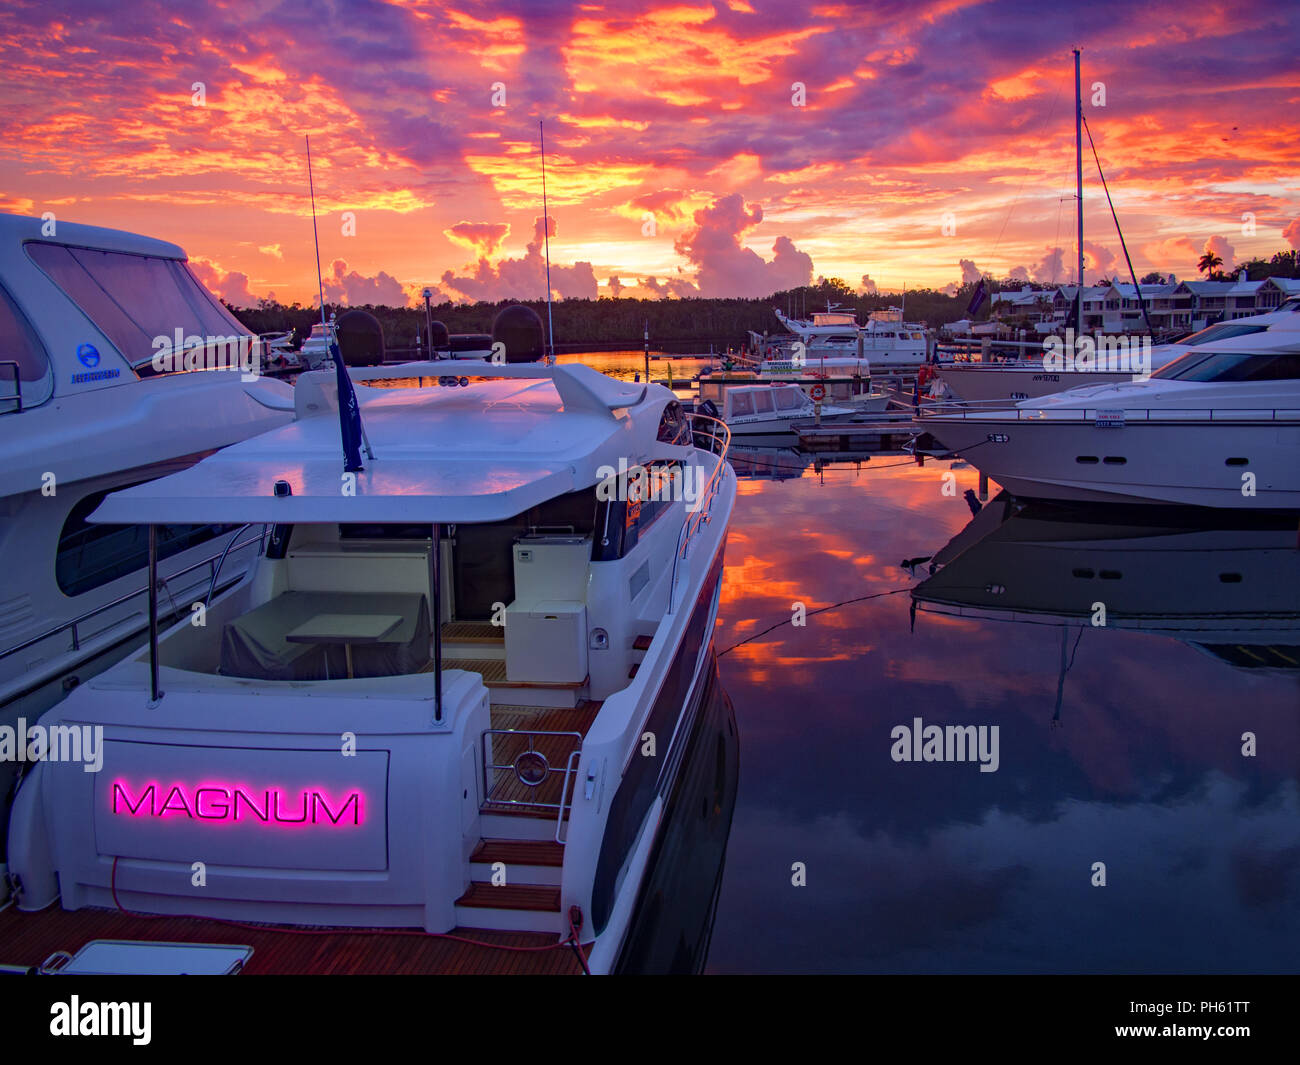 Los barcos atracaron en el Sanctuary Cove yacht club temprano en la mañana antes del amanecer imagen ancha Foto de stock